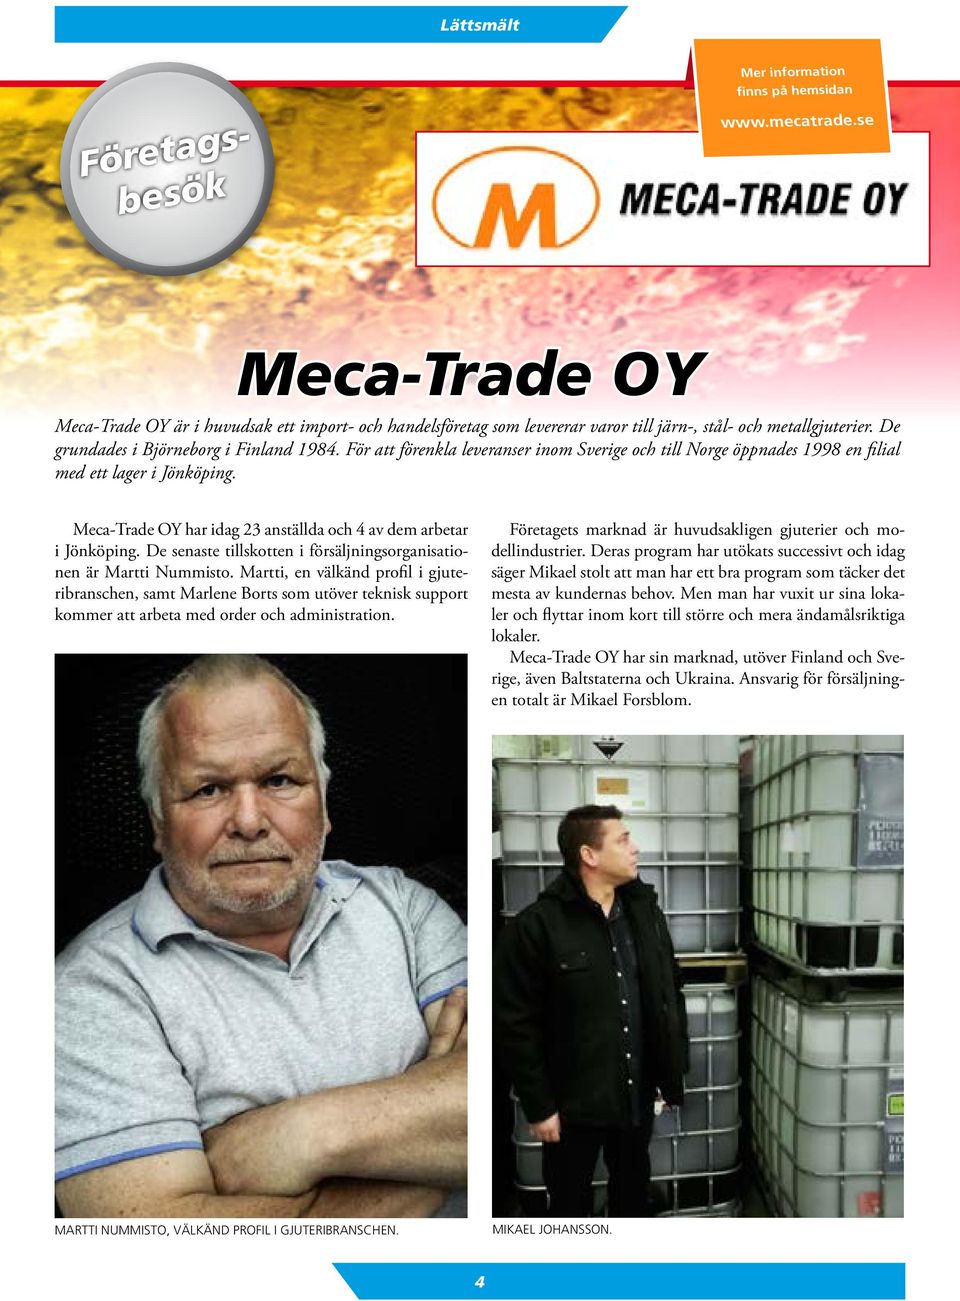 Meca-Trade OY har idag 23 anställda och 4 av dem arbetar i Jönköping. De senaste tillskotten i försäljningsorganisationen är Martti Nummisto.